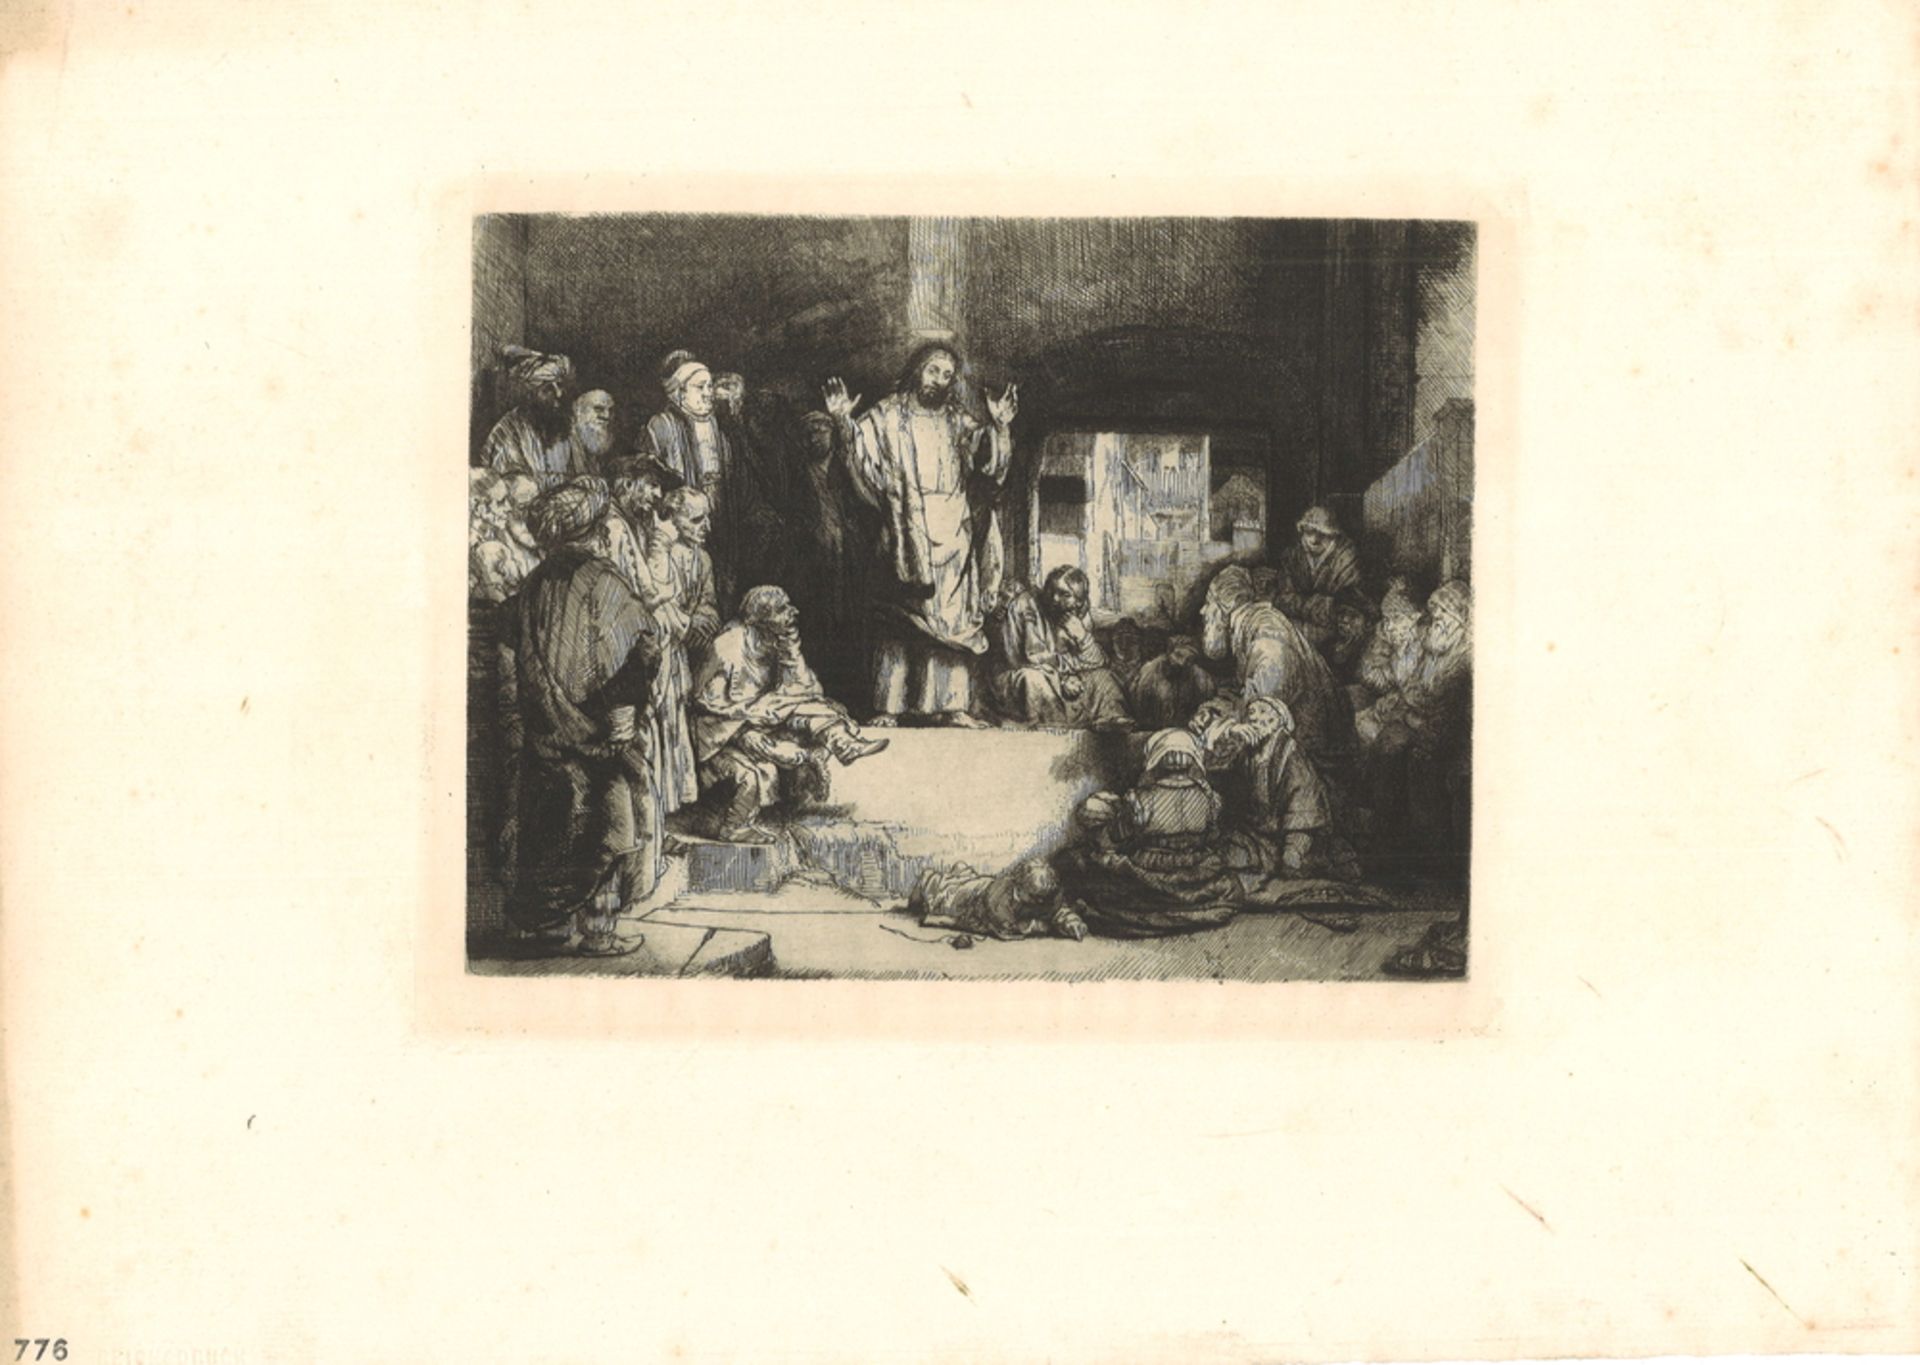 Lithografie, "Christus predigt", 1652 von Rembrandt van Rijn (1606-1669), Stempel auf der